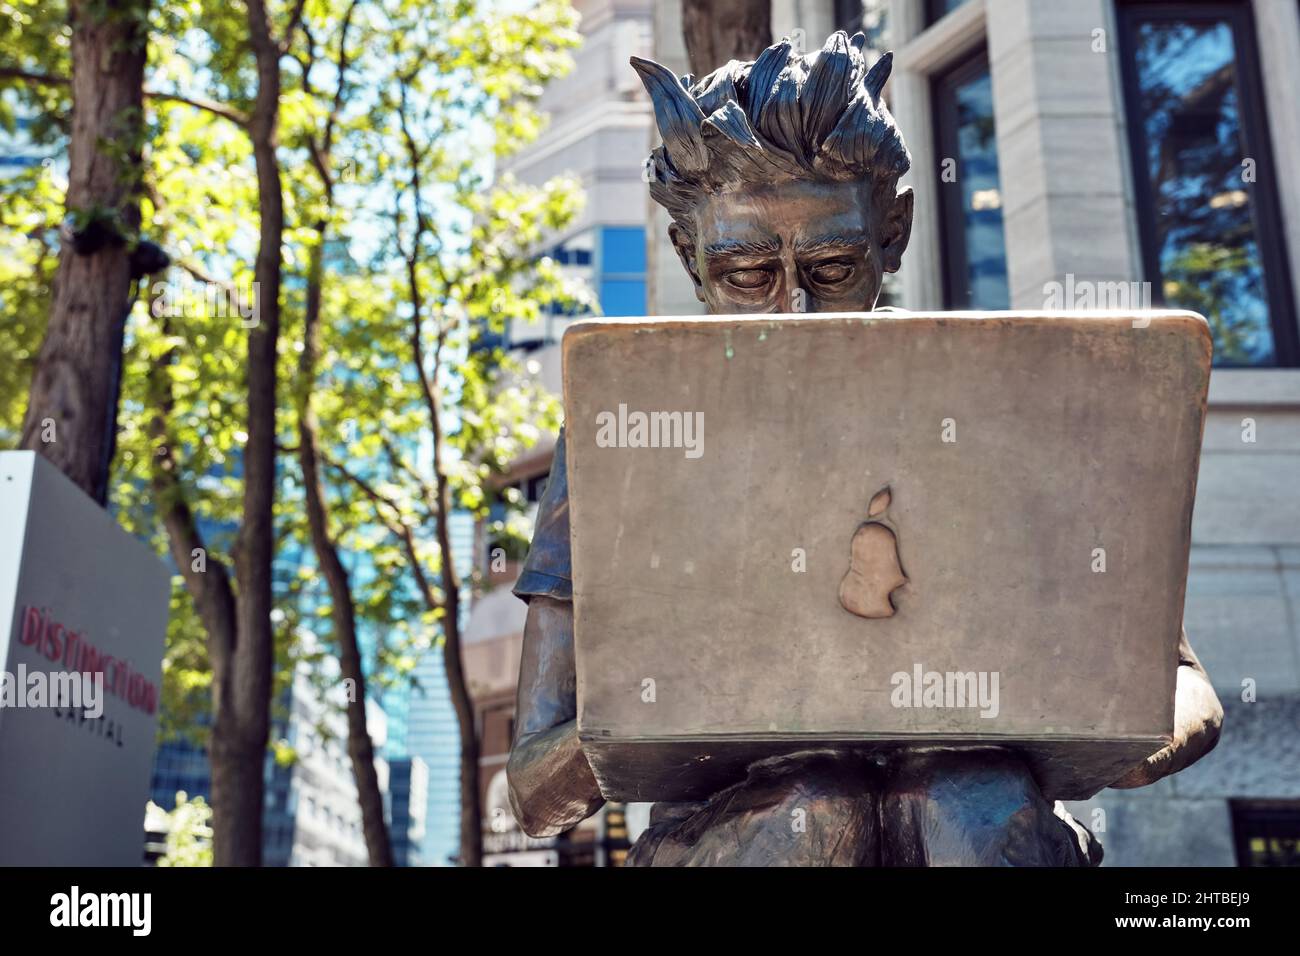 Juin 2018 - Montréal, Canada : statue étudiante de l'Université McGill assise sur un banc et utilisant un ordinateur portable dans la rue Sherbrooke à Montréal, Québec, CAN Banque D'Images